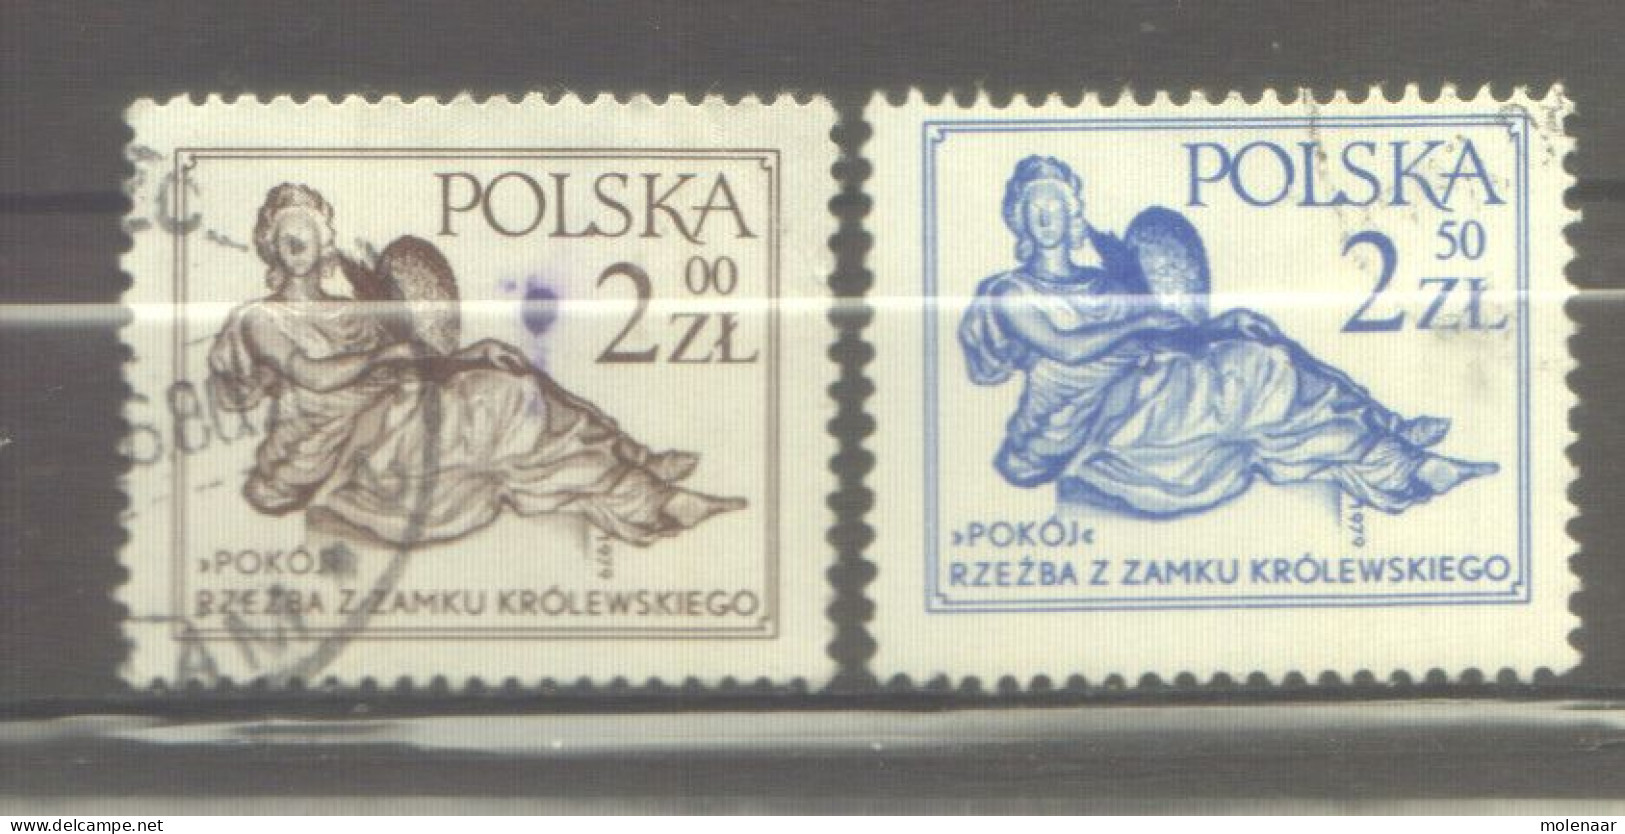 Postzegels > Europa > Polen > 1944-.... Republiek > 1971-80 > Gebruikt  2652-2653 (12176) - Gebraucht